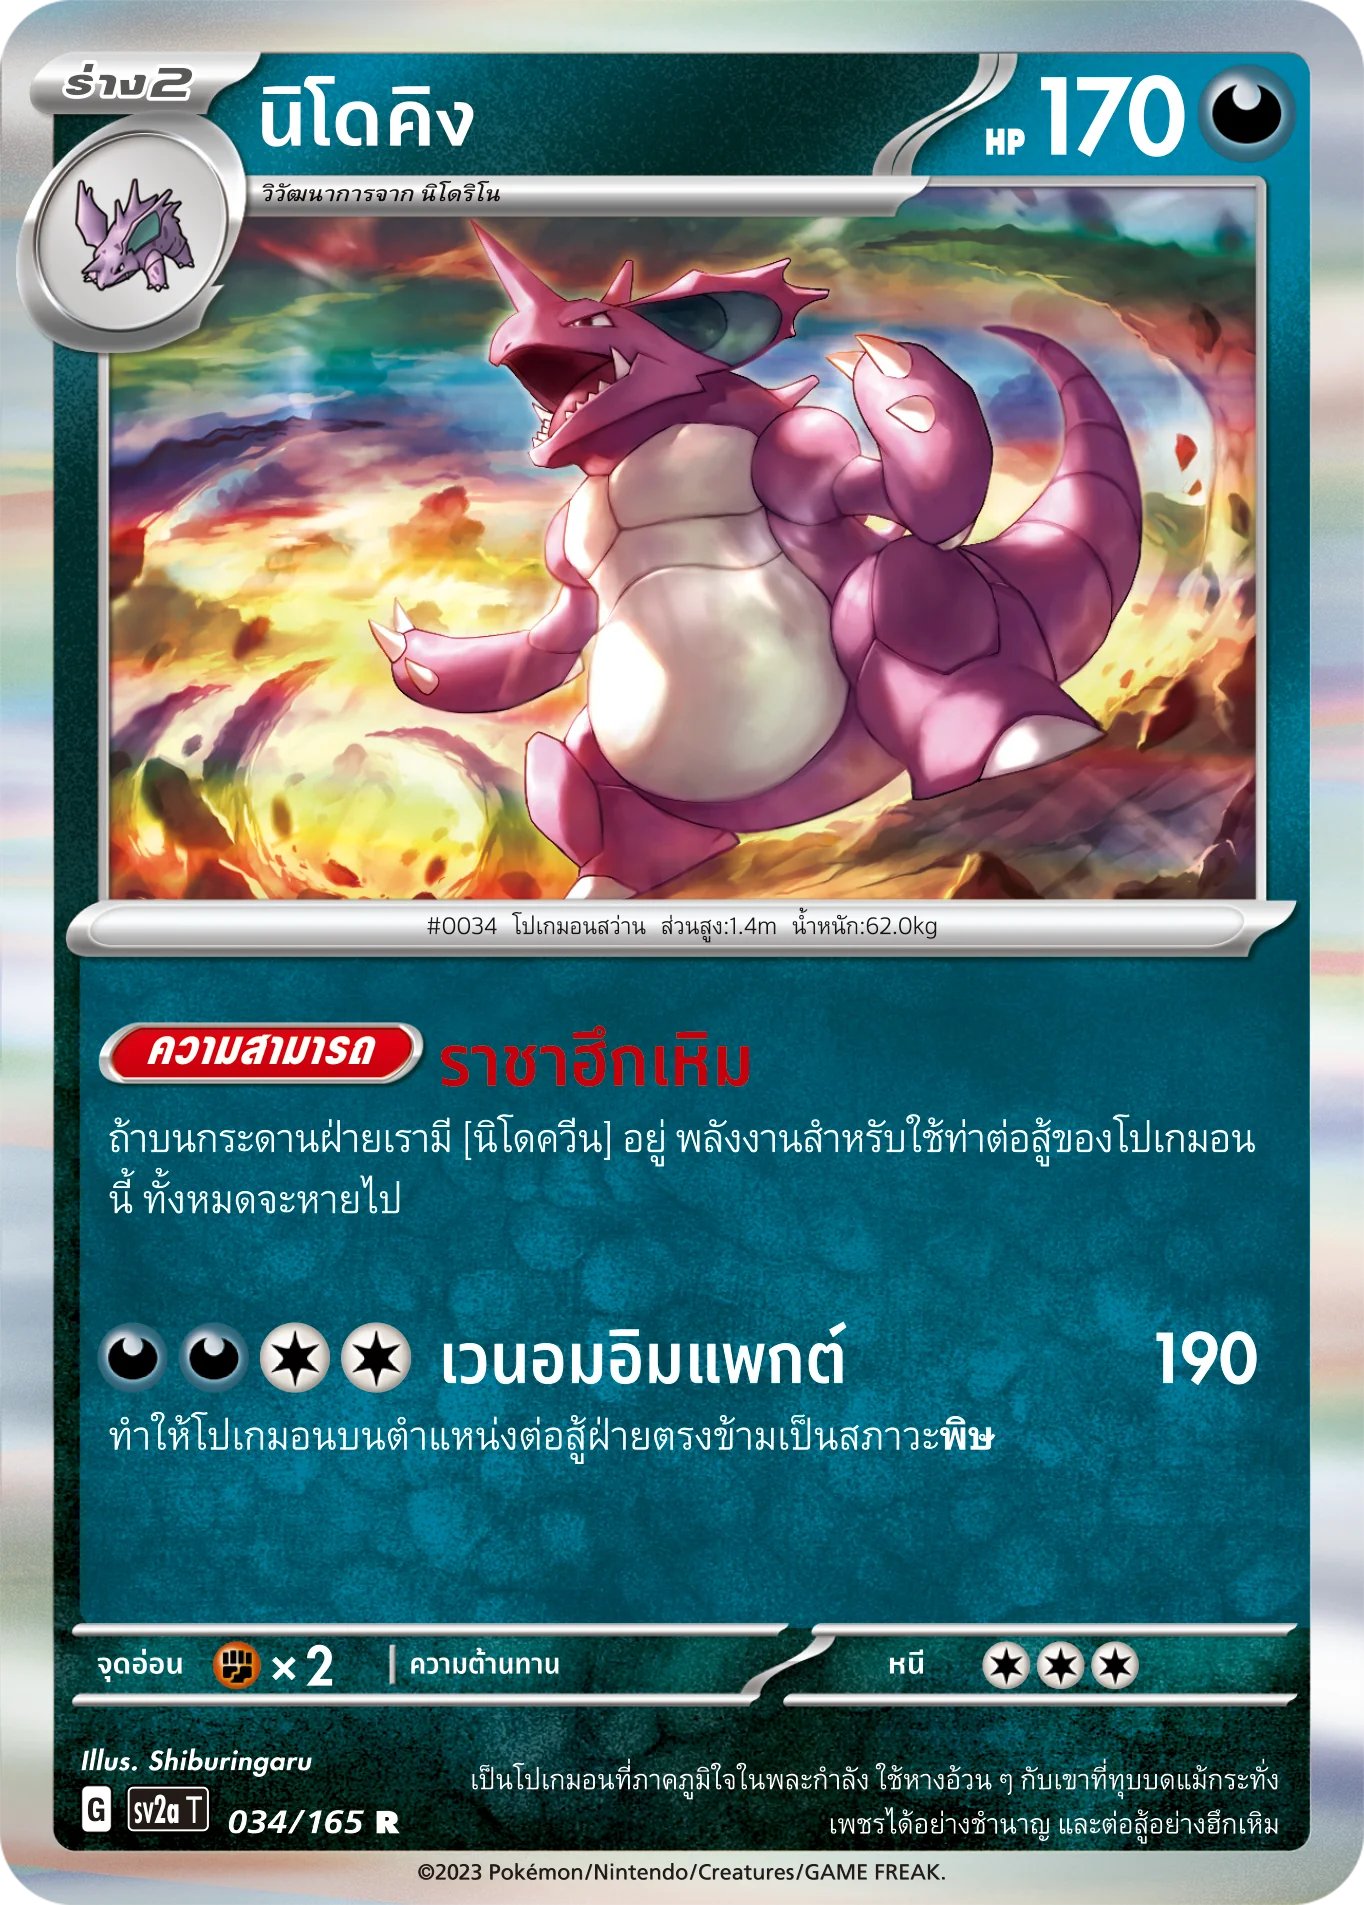 3 x OFFICIAL THAI POKEMON Scarlet & Violet 151 HOLOFOIL CARDS BUNDLE 01